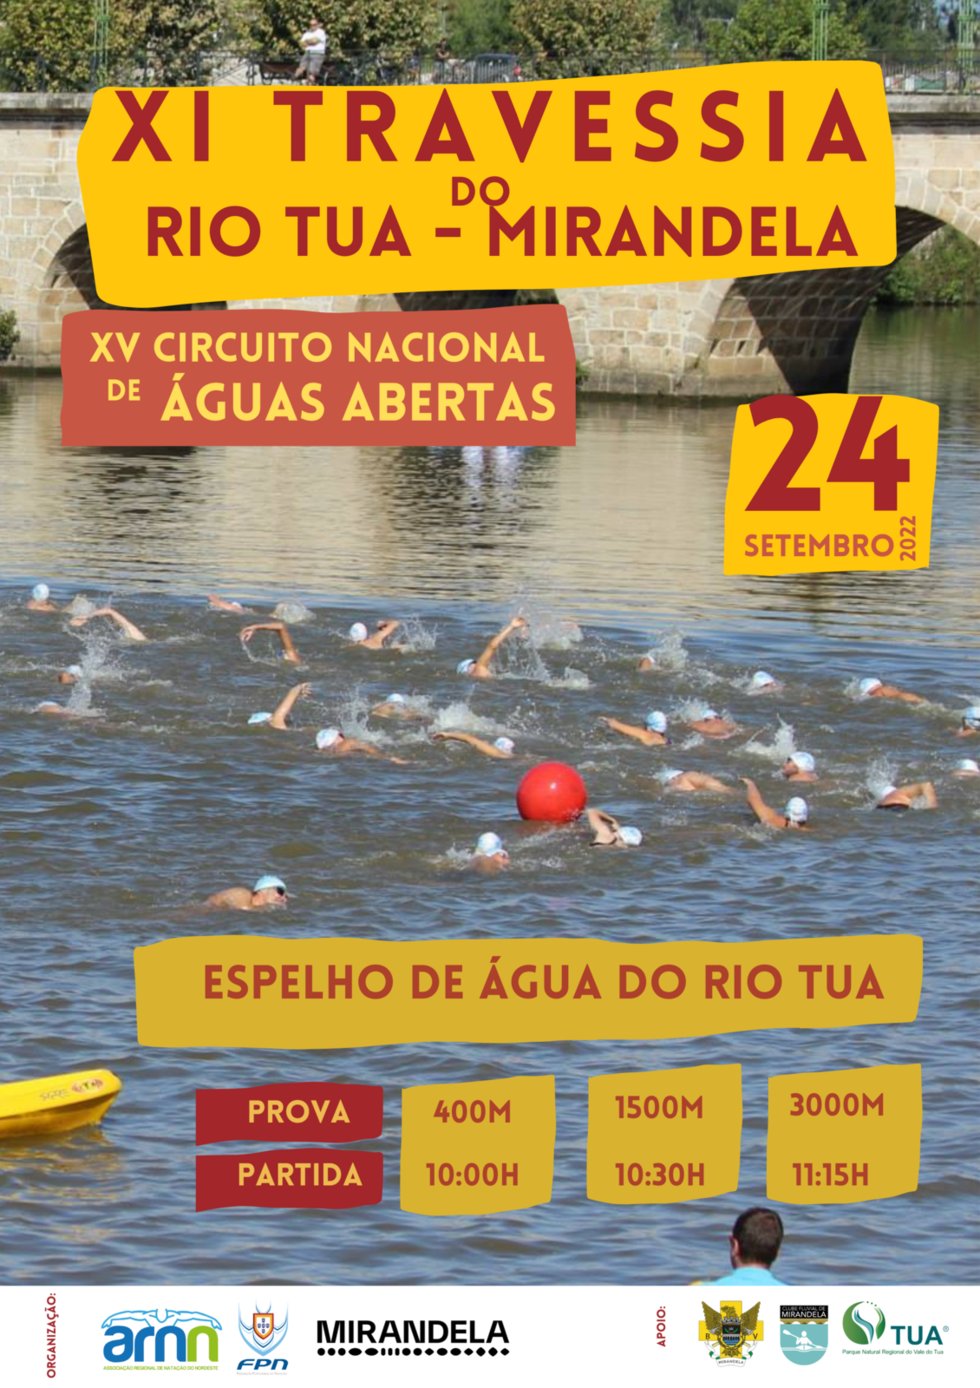 XI Travessia do Rio Tua a contar para o Circuito Nacional de Águas Abertas.